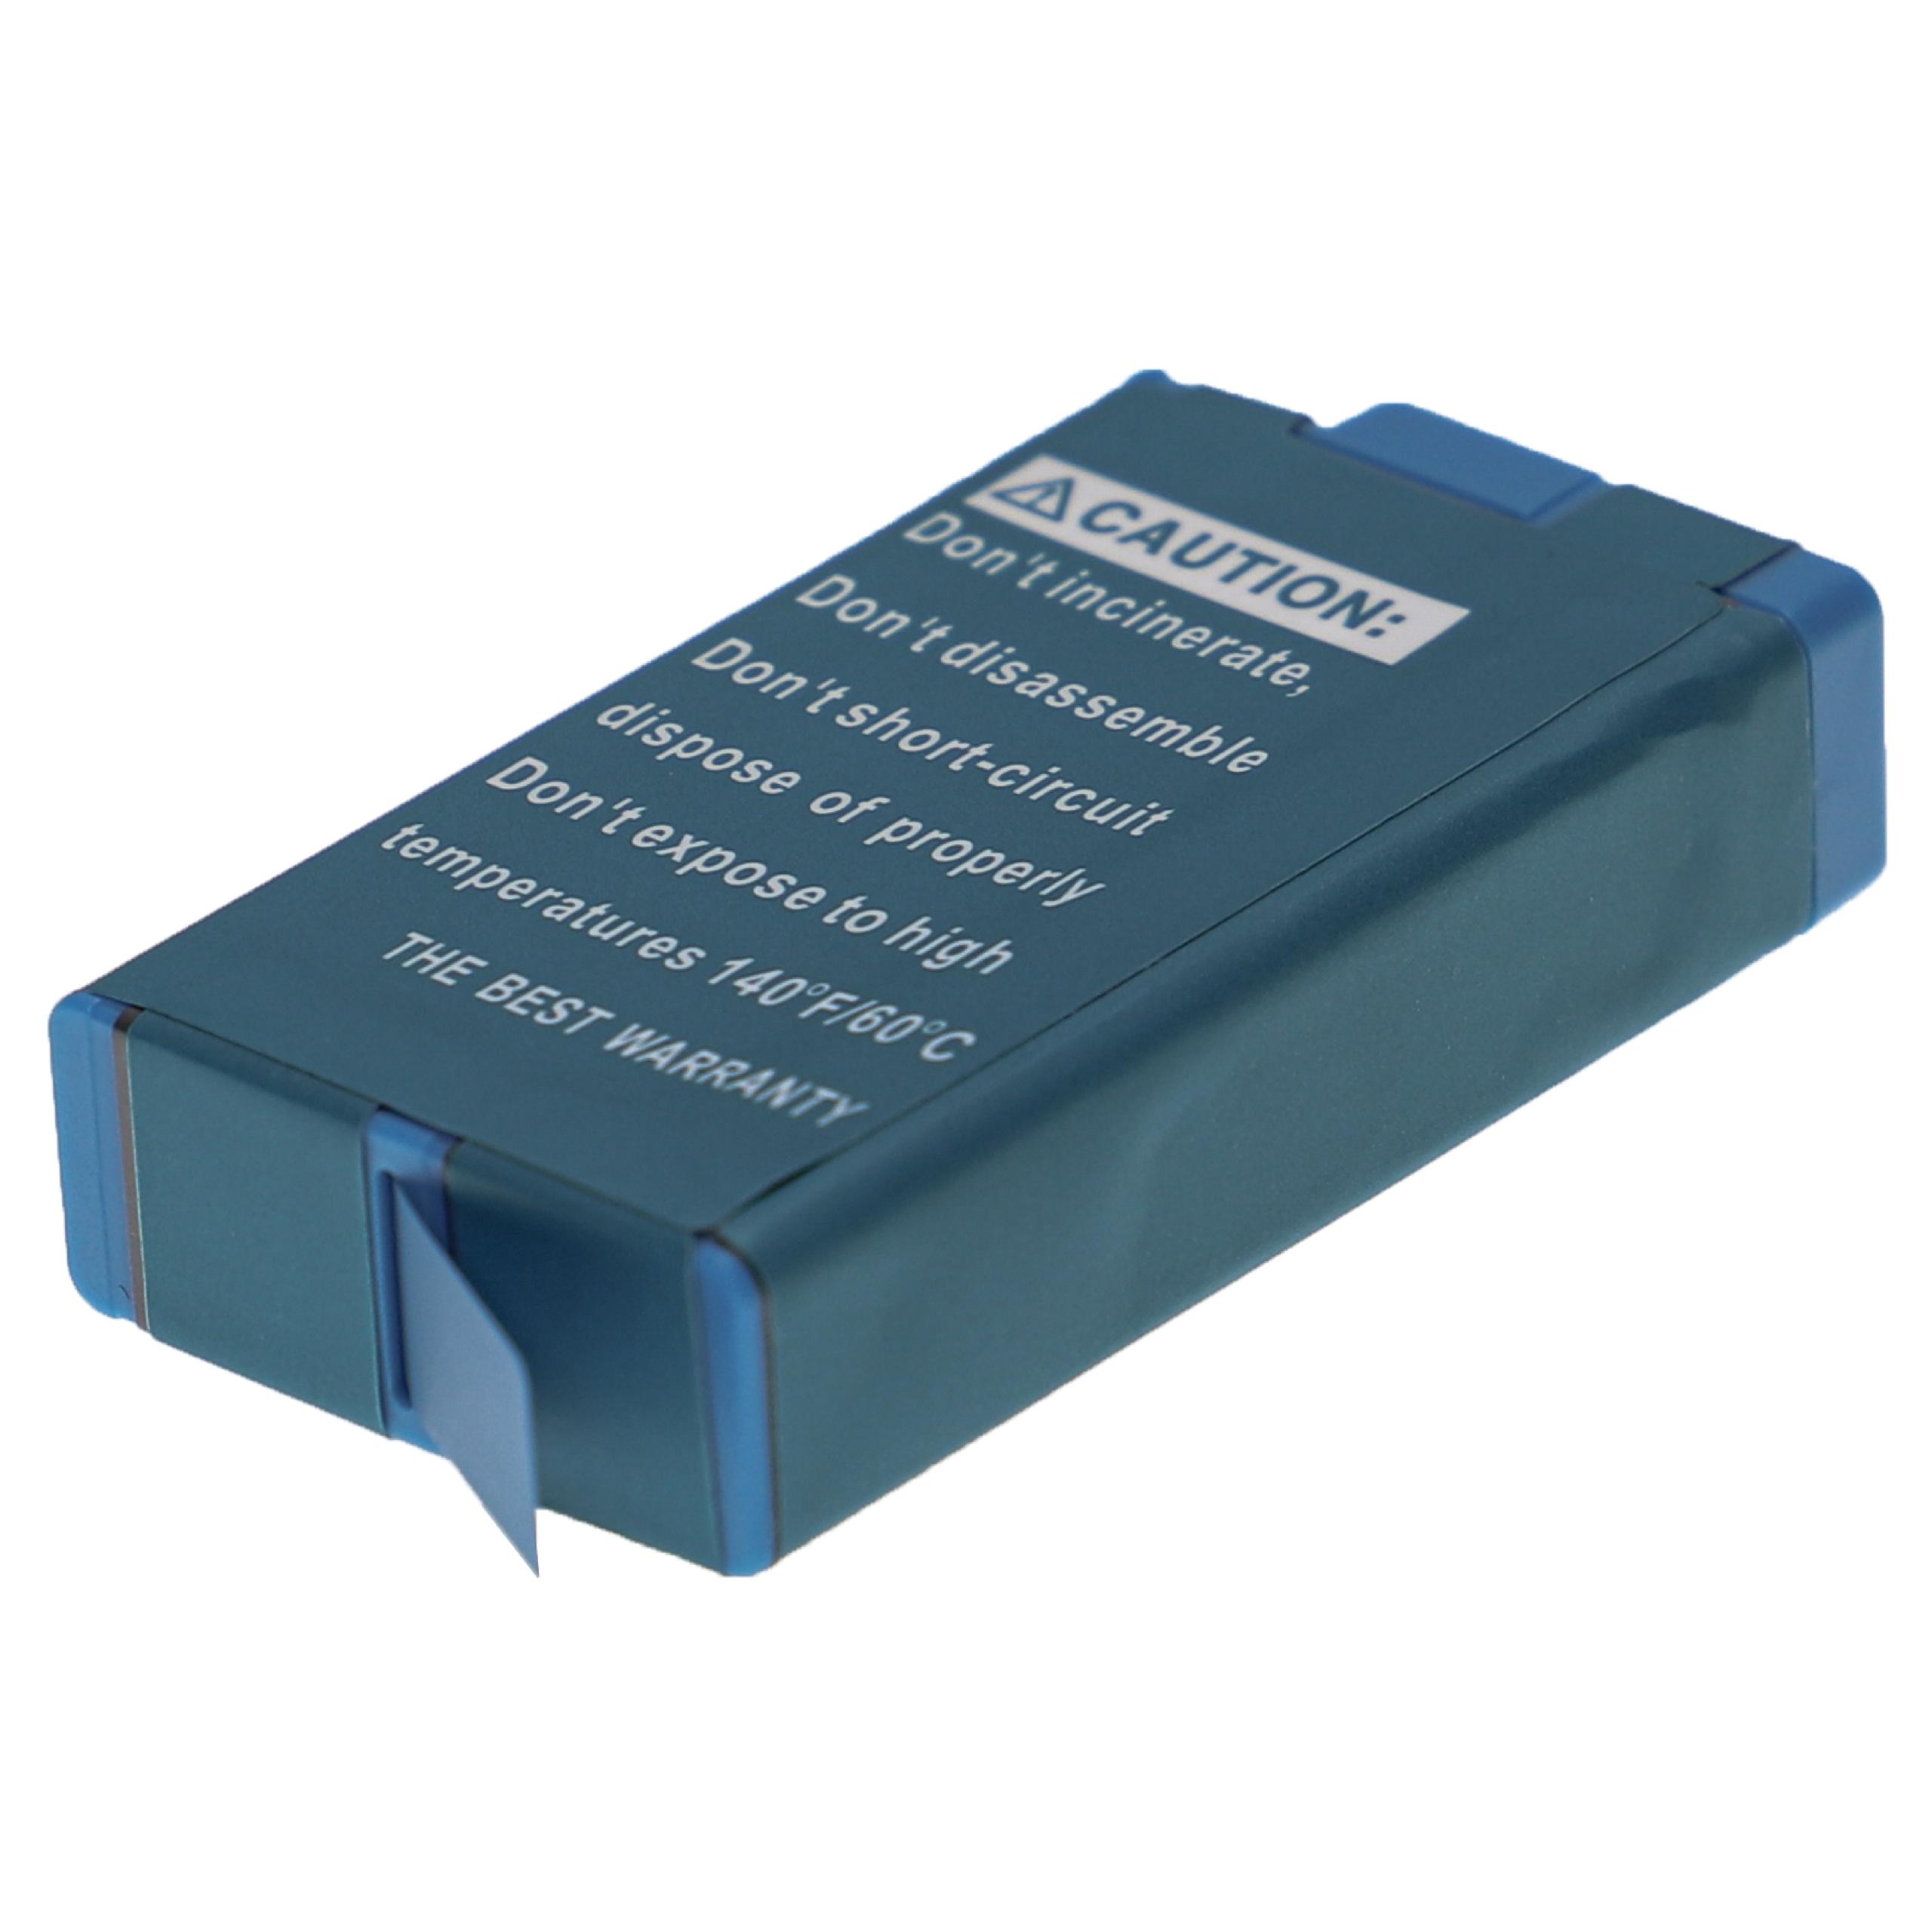 Batterie remplace GoPro 601-26762-000, SPCC1B pour caméscope - 1400mAh 3,85V Li-ion